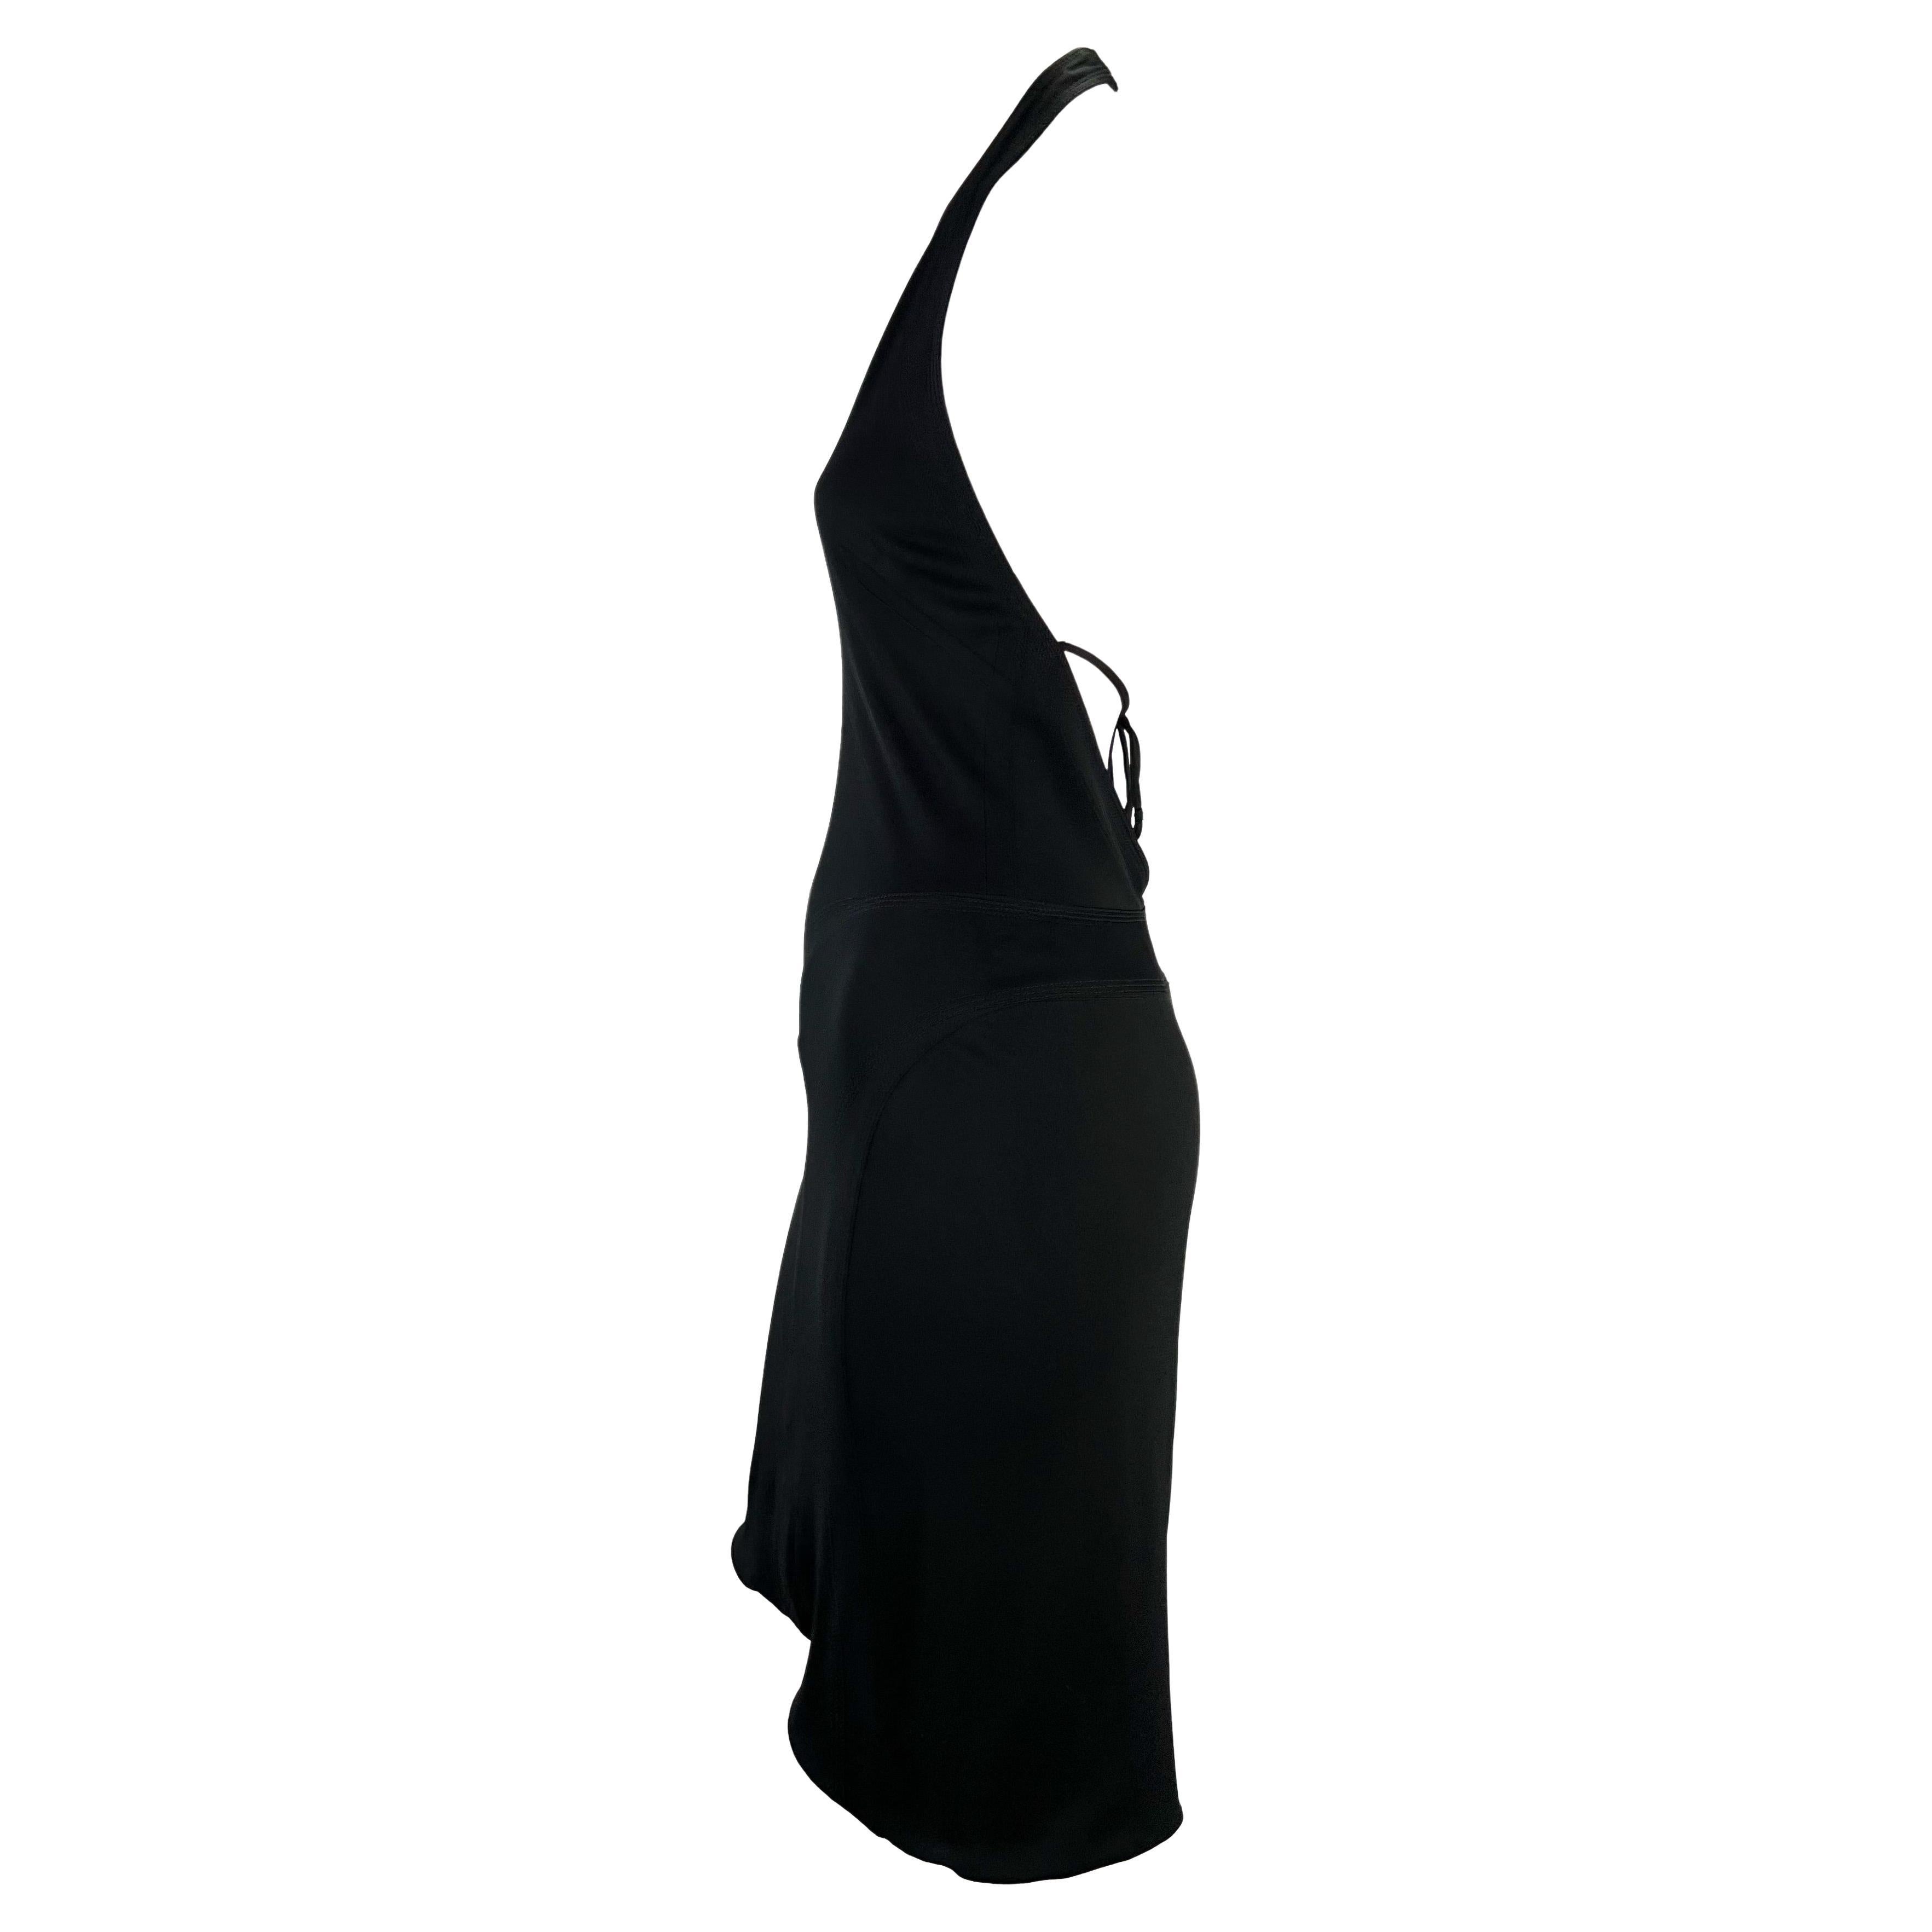 Présentation d'une robe dos nu en stretch noir Gianni Versace, dessinée par Donatella Versace. Datant du début des années 2000, cette robe fabuleuse et coquette présente un décolleté en V plongeant, un dos découvert avec un lien autour de la taille